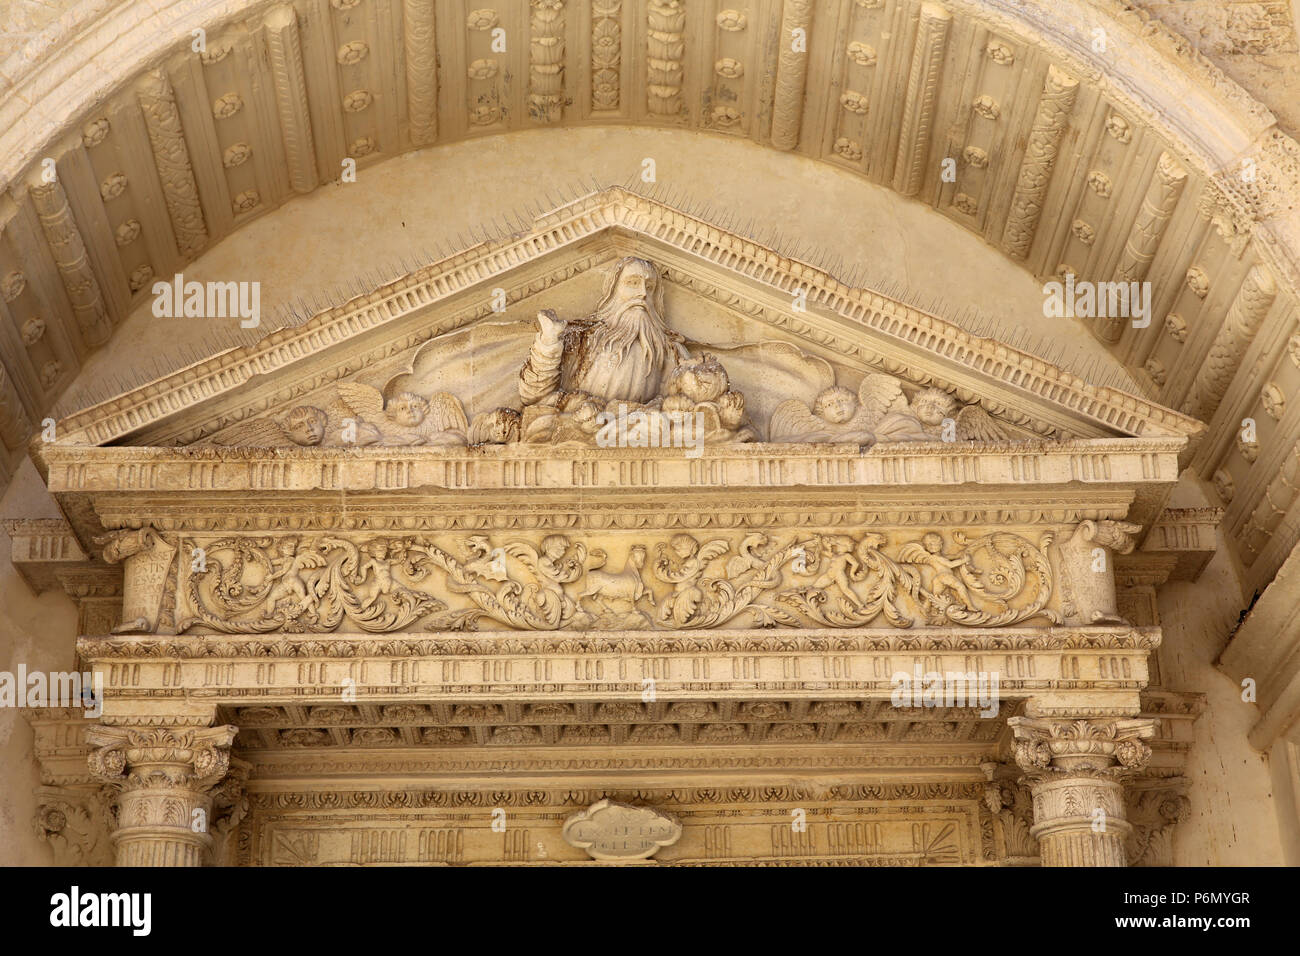 Tympan de la porte d'entrée principale de Madona del Carmine église, Nardo, Italie. Dieu dans le ciel. Banque D'Images